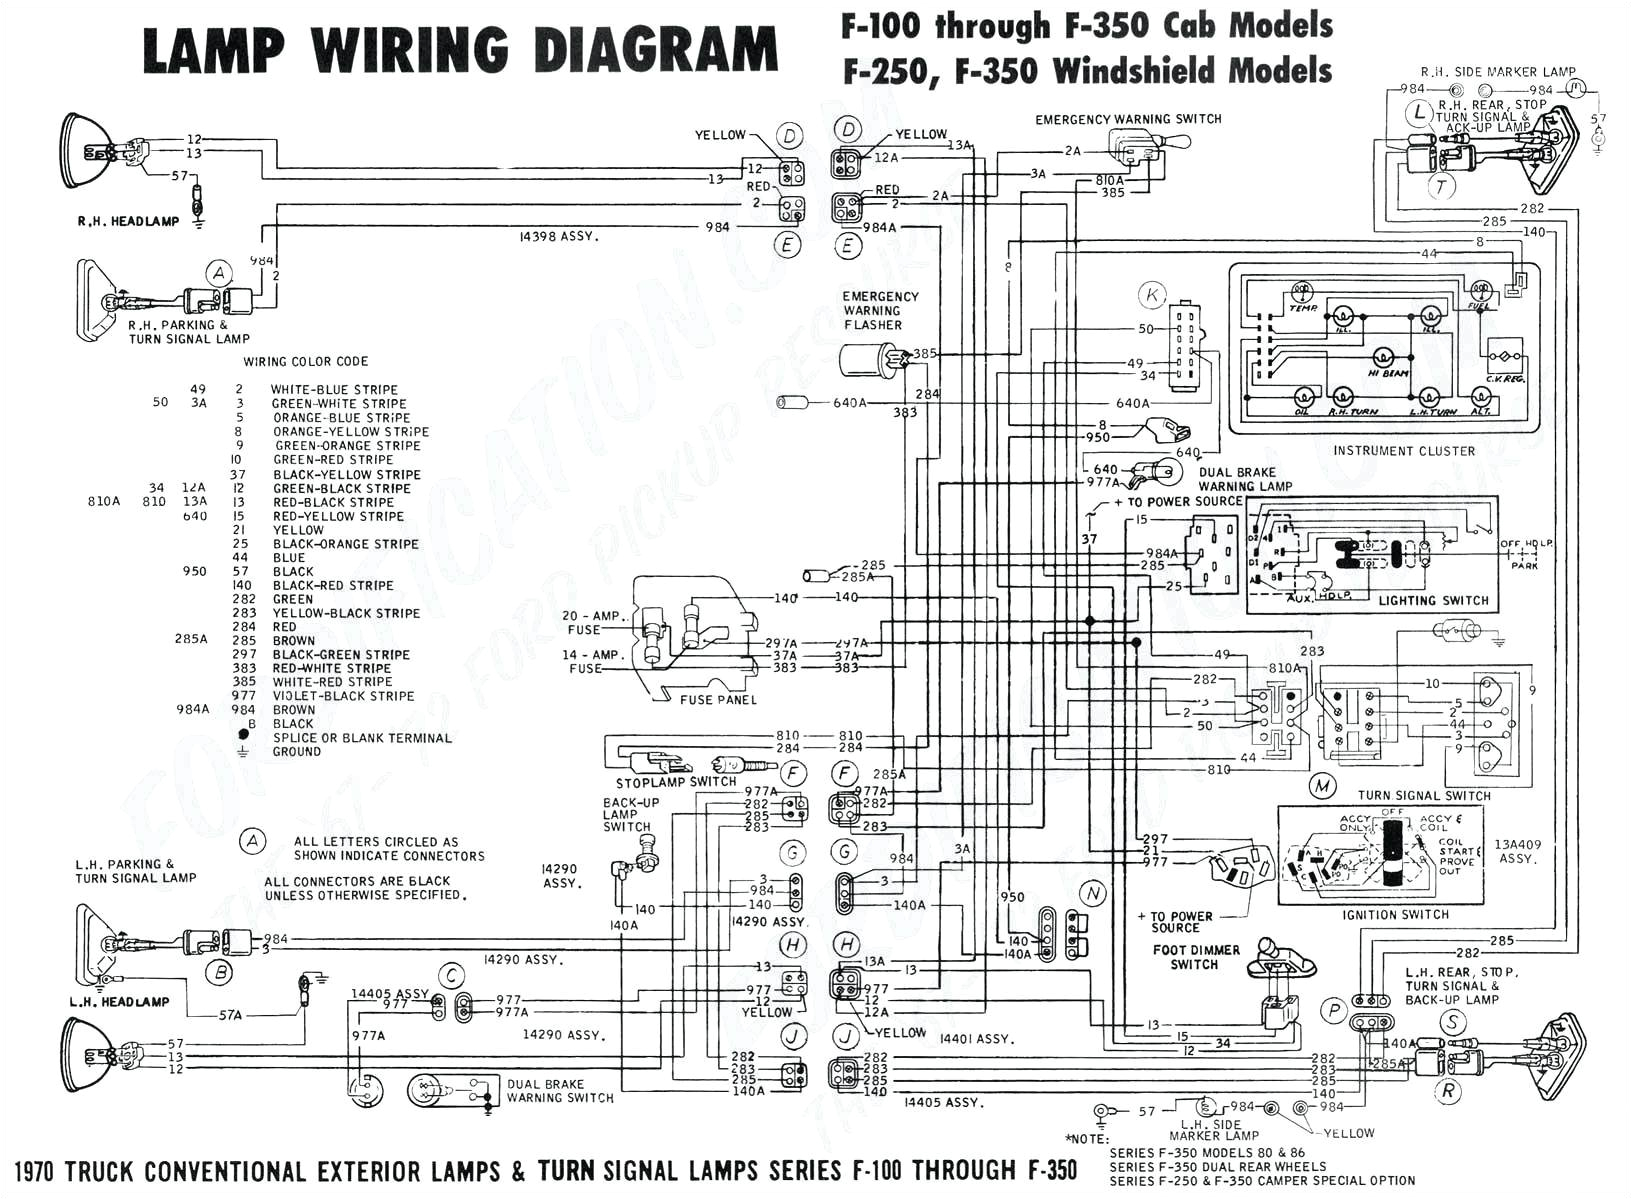 91 k 5 wiring diagrams wiring diagram name wiring diagrams for kitchen k5 wiring diagram wiring